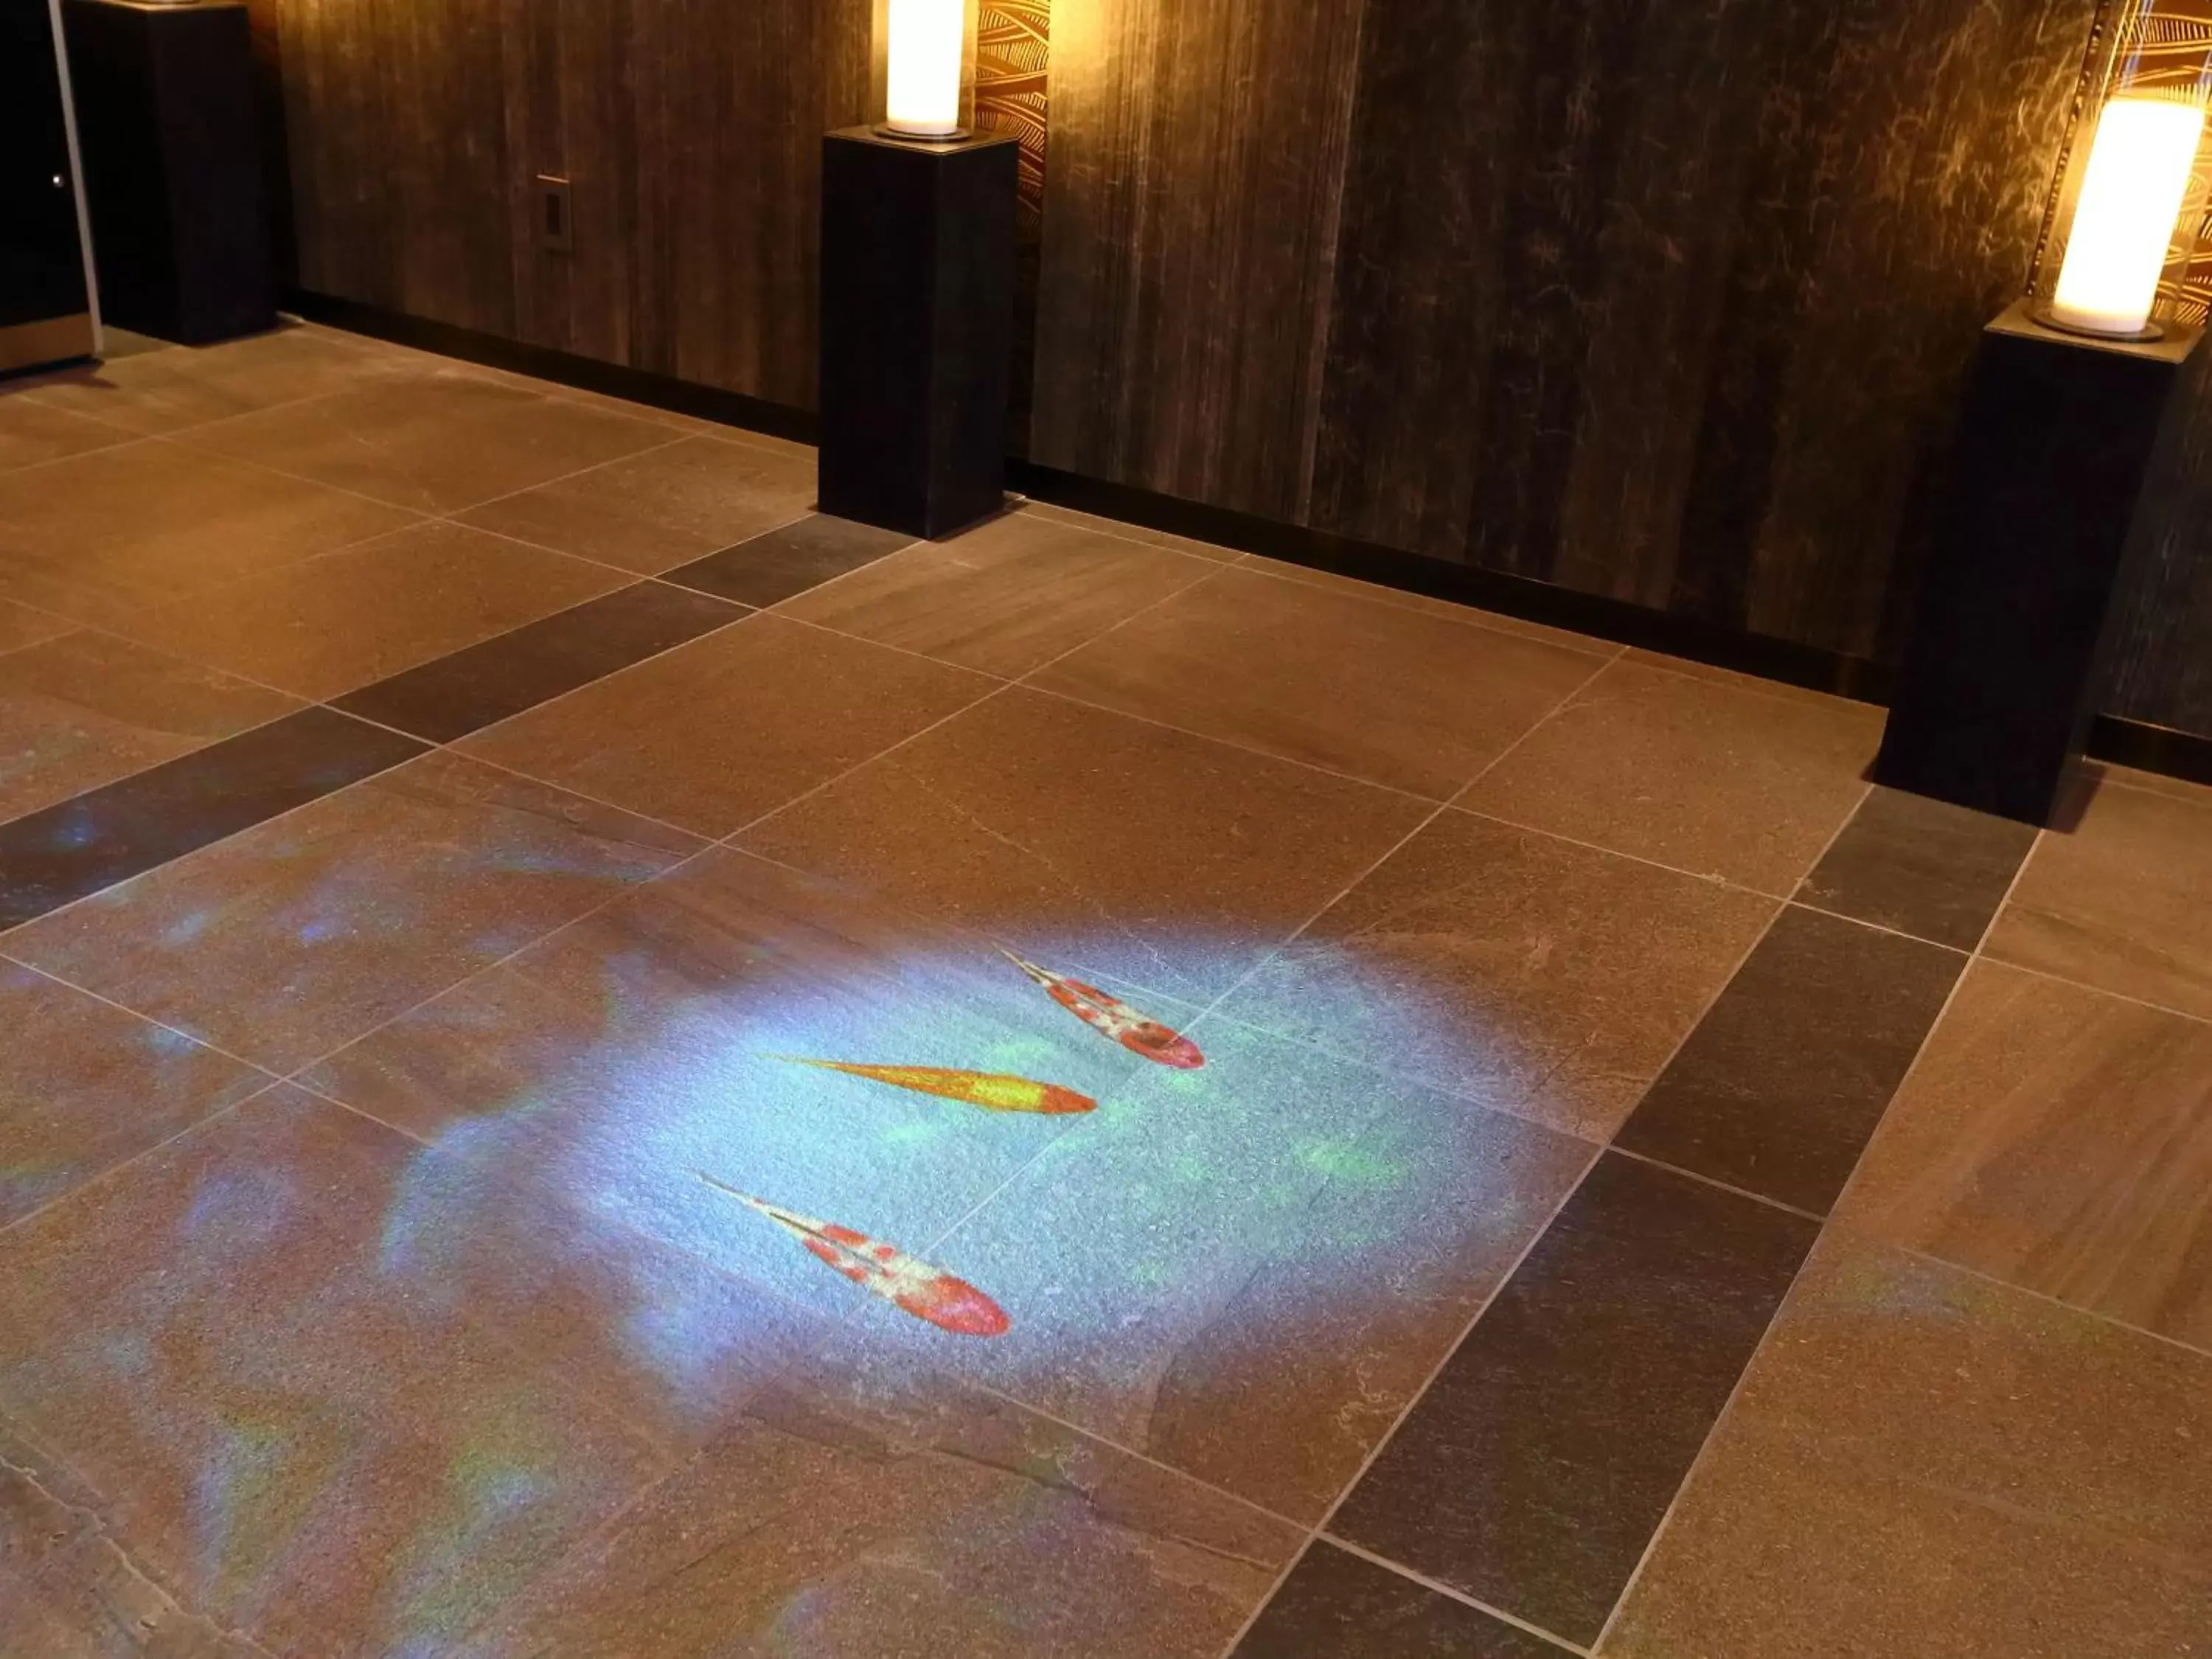 Lobby or reception, Bathroom in Henn na Hotel Kyoto Hachijoguchi